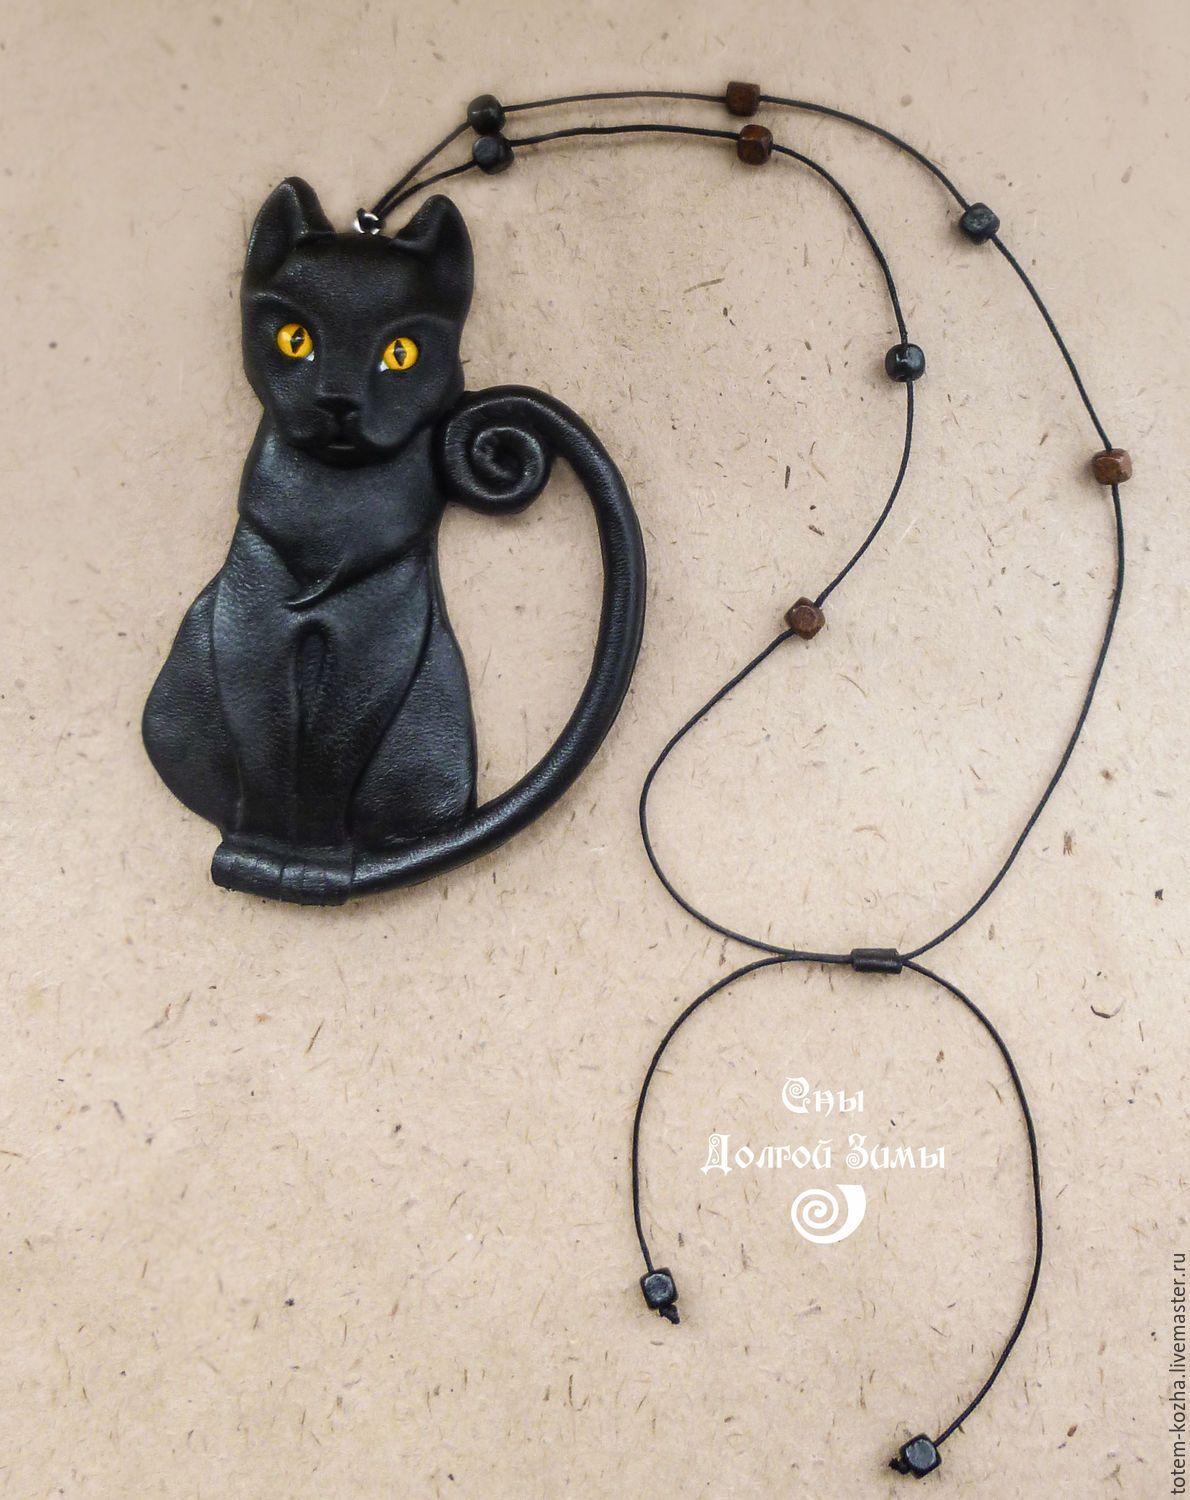 Черный кот - атрибут каждой ведьмы ;)